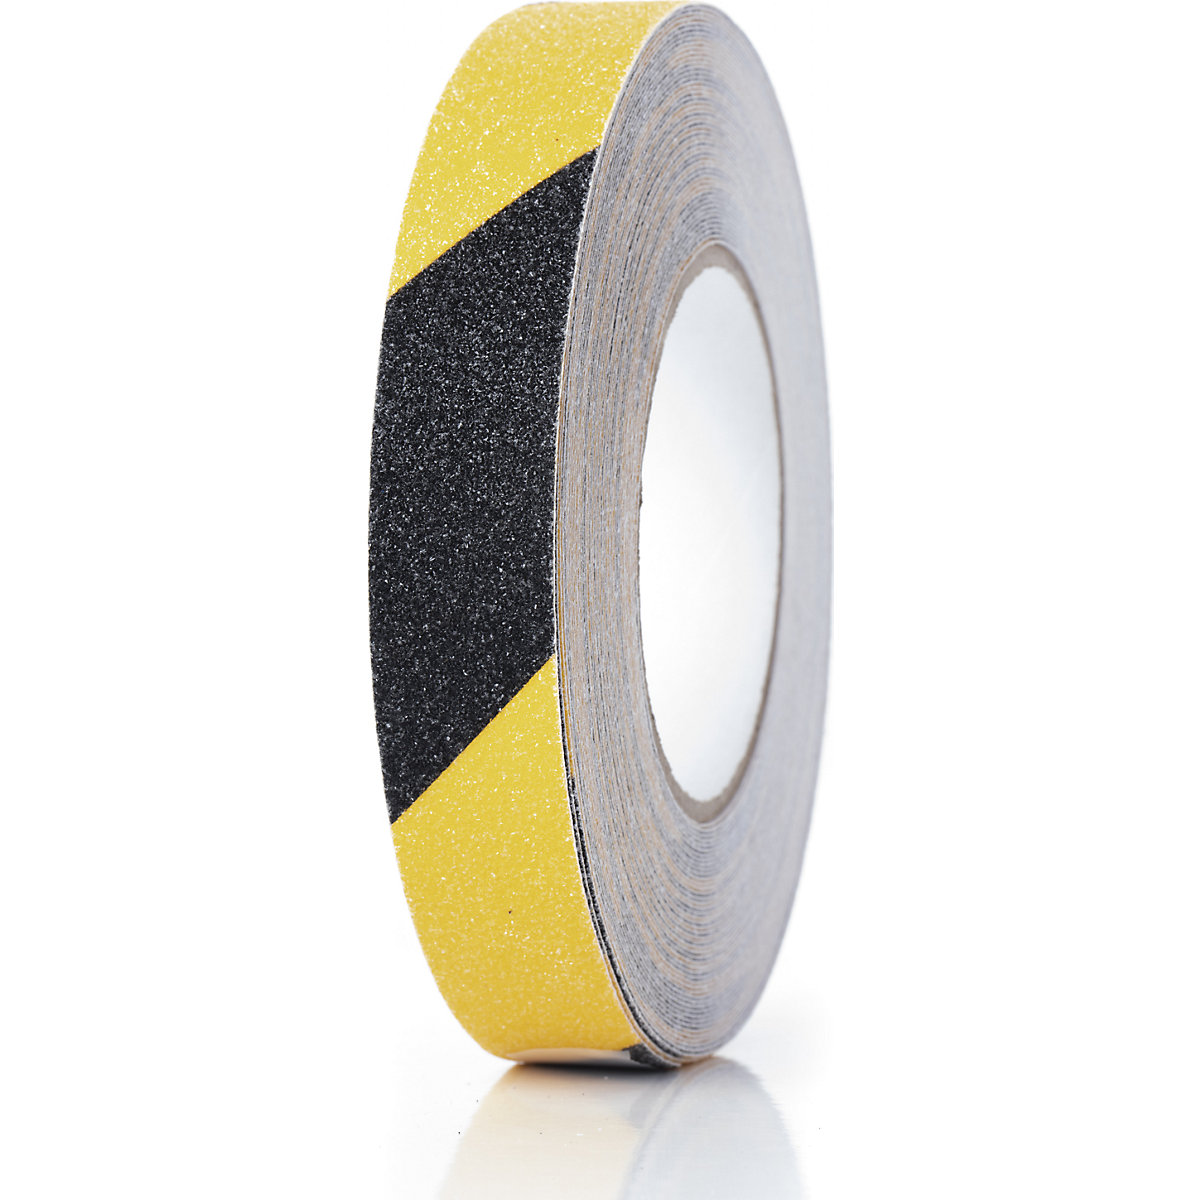 Traka za označavanje podova, protuklizna – Ampere, širina 25 mm, u žutoj/crnoj boji-3